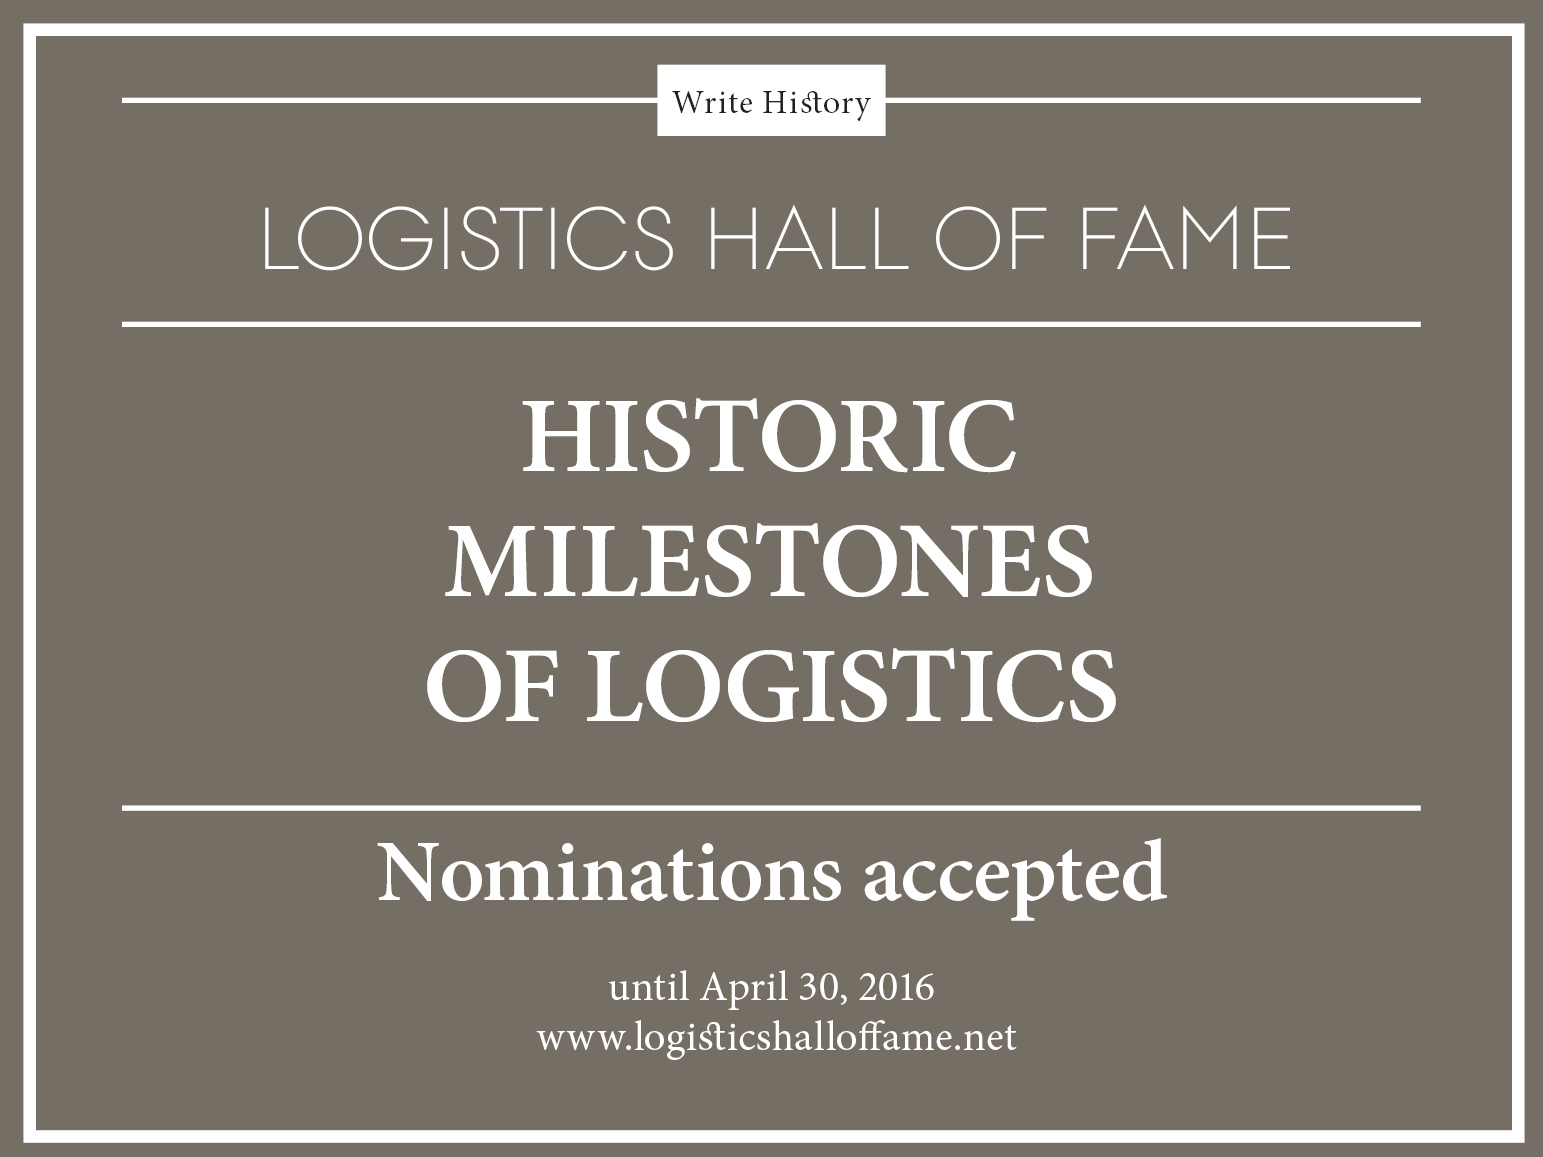 Countdown für Logistics Hall of Fame-Vorschläge läuft